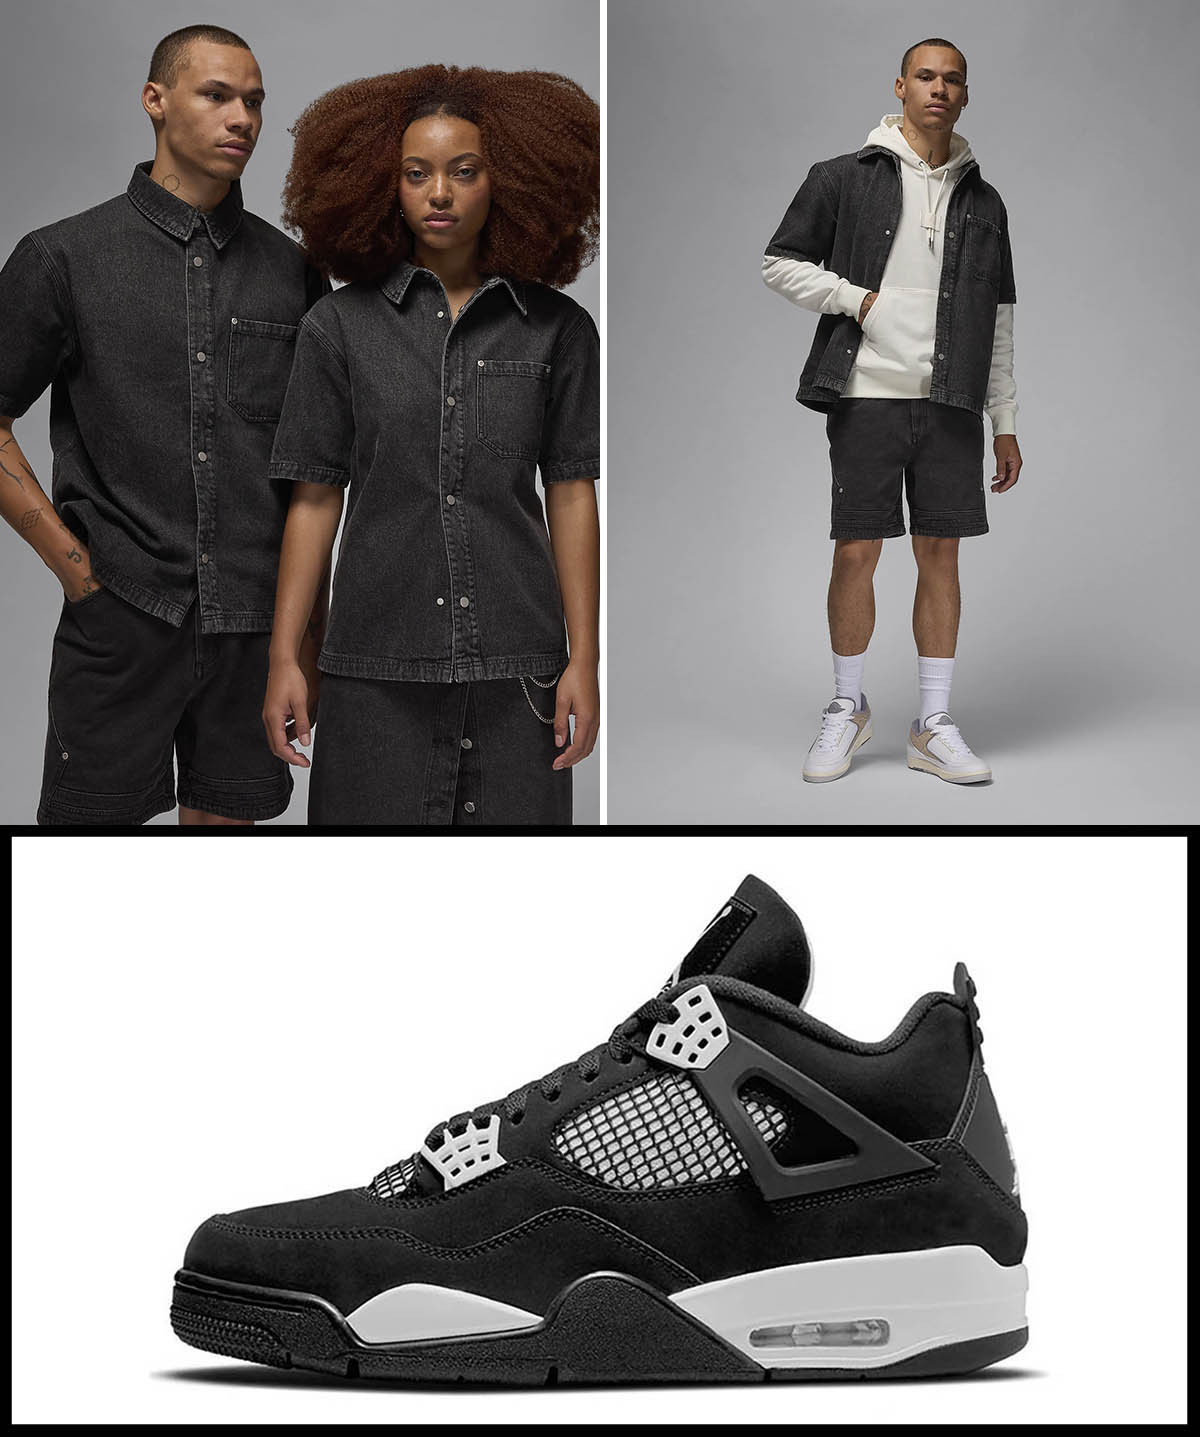 Air Jordan 4 White Thunder Black Denim Shirt Shorts Clothing